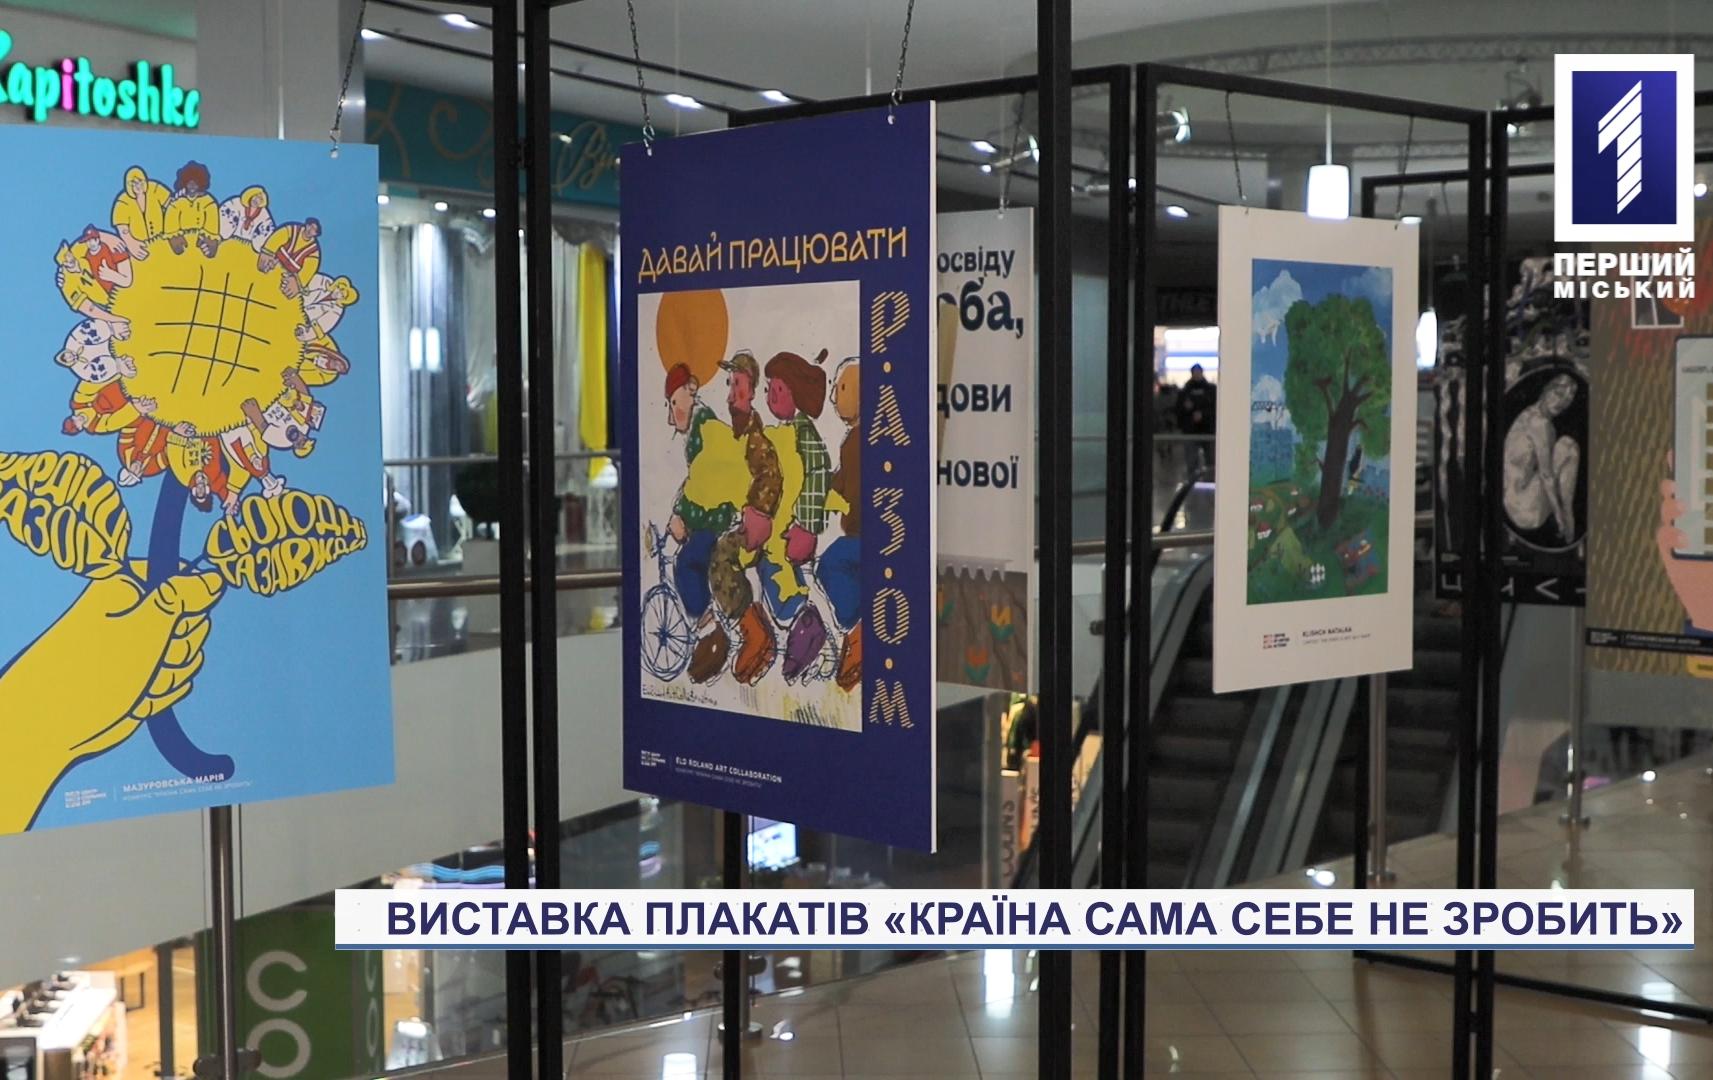 «Країна сама себе не зробить»: у Кривому Розі стартувала соціальна виставка плакатів та малюнків